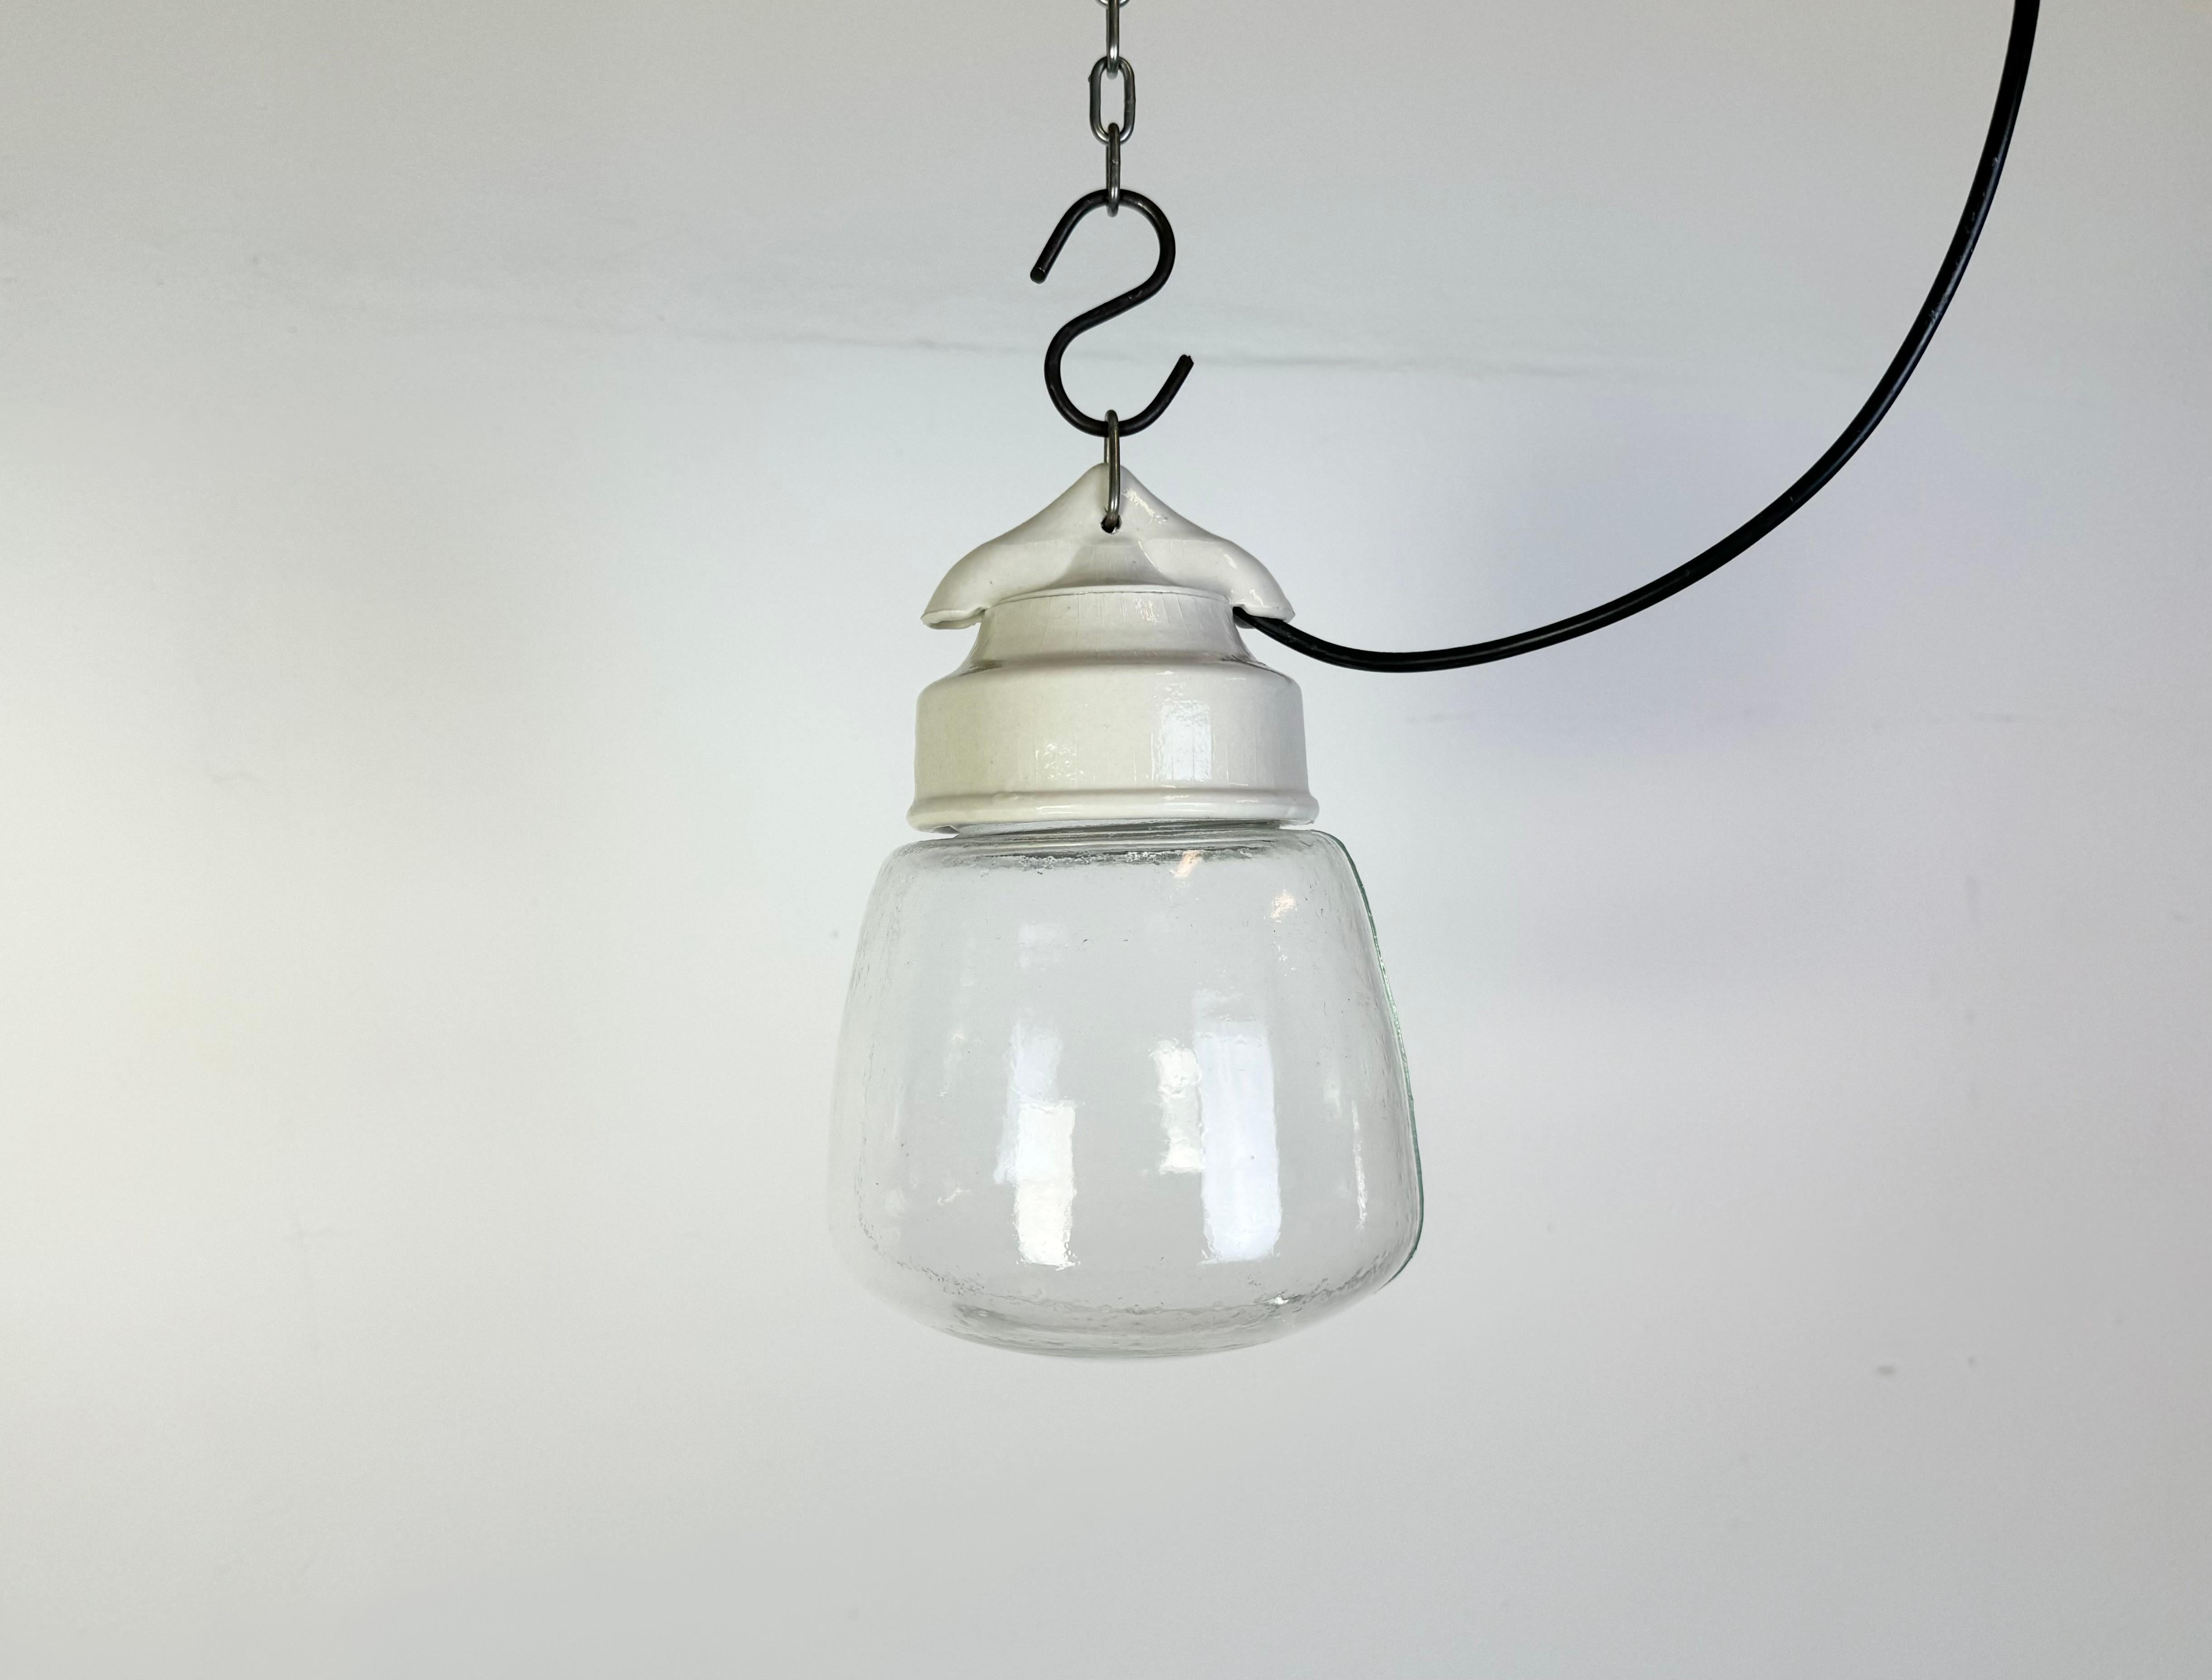 Lampe industrielle vintage fabriquée dans l'ancienne Tchécoslovaquie  au cours des années 1970. Il est doté d'un plateau en porcelaine blanche et d'un couvercle en verre. La douille est compatible avec les ampoules standard E27/ E26. Un nouveau fil.